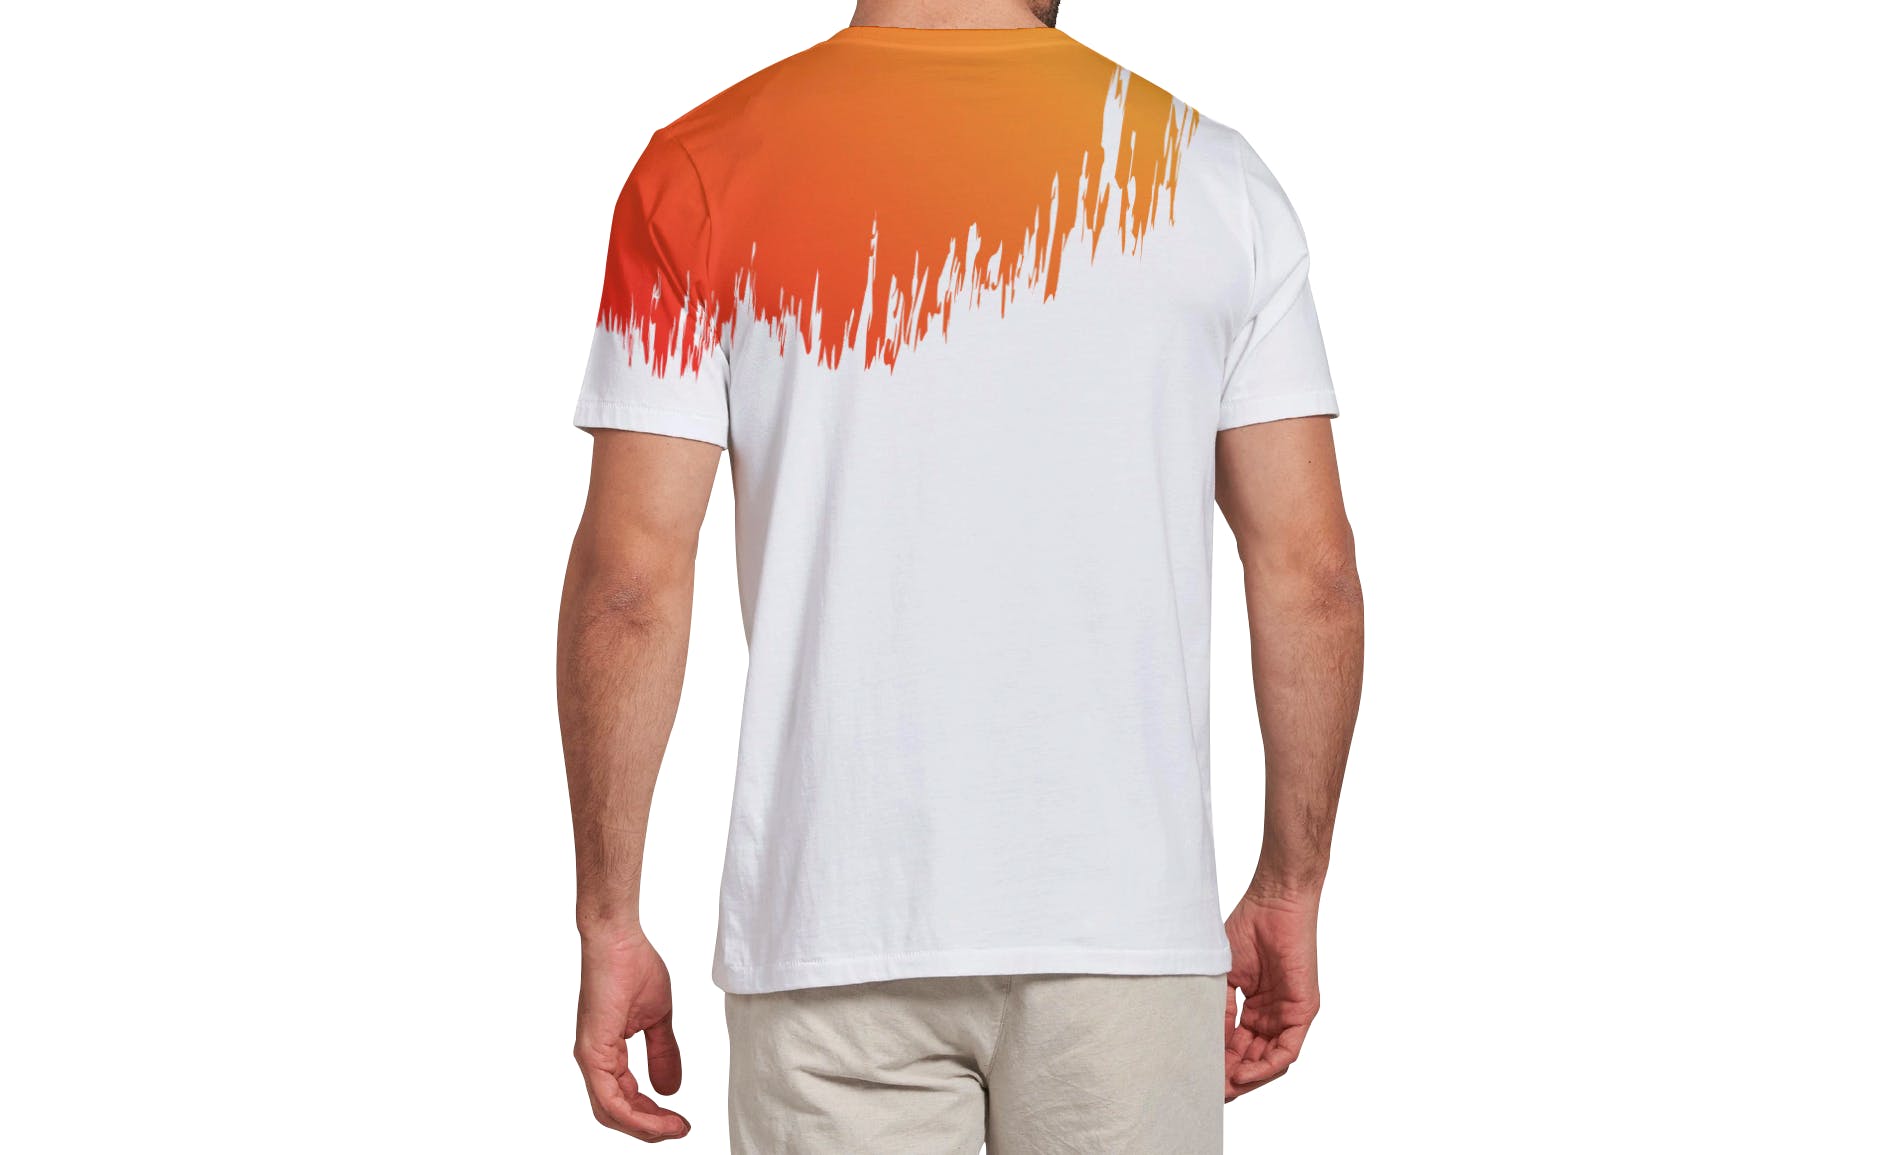 男士T恤印花设计效果图样机蚂蚁素材精选v03 T-shirt Mockup Vol 03插图(13)